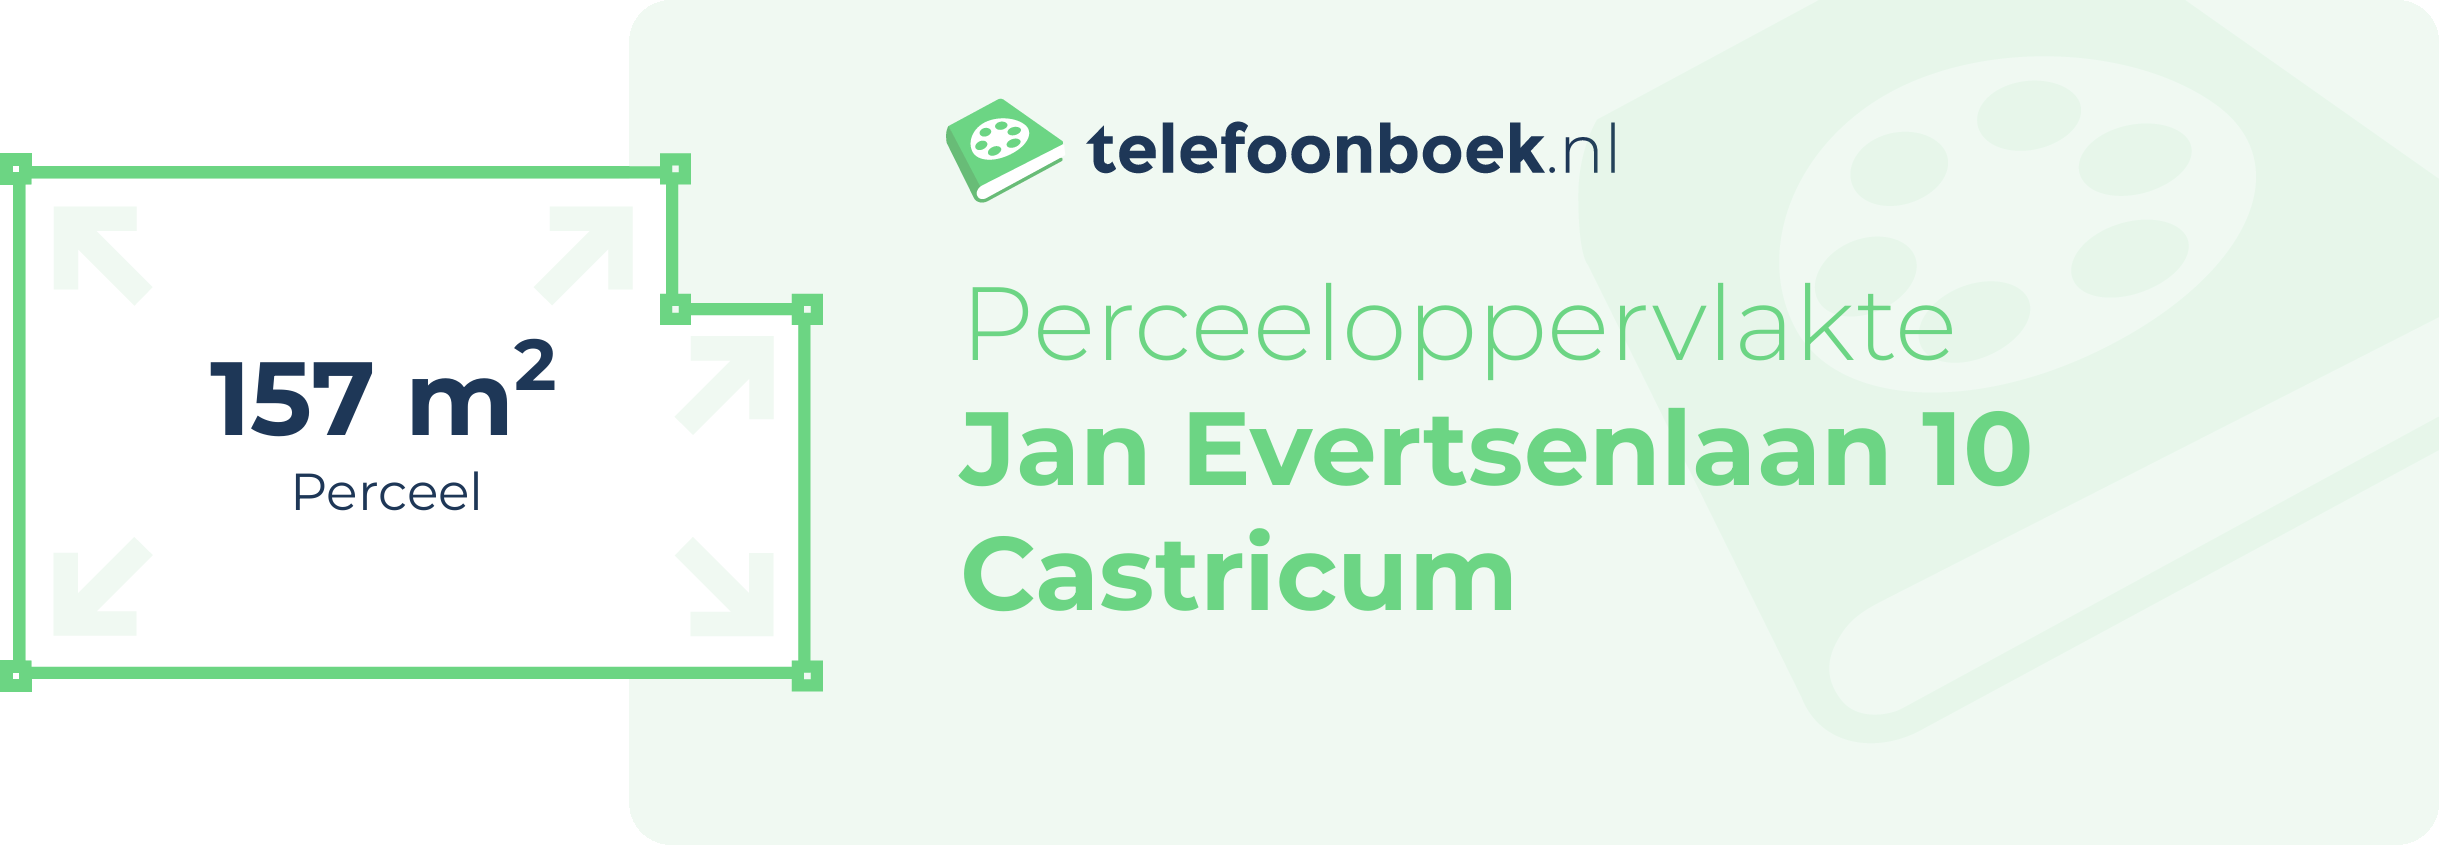 Perceeloppervlakte Jan Evertsenlaan 10 Castricum